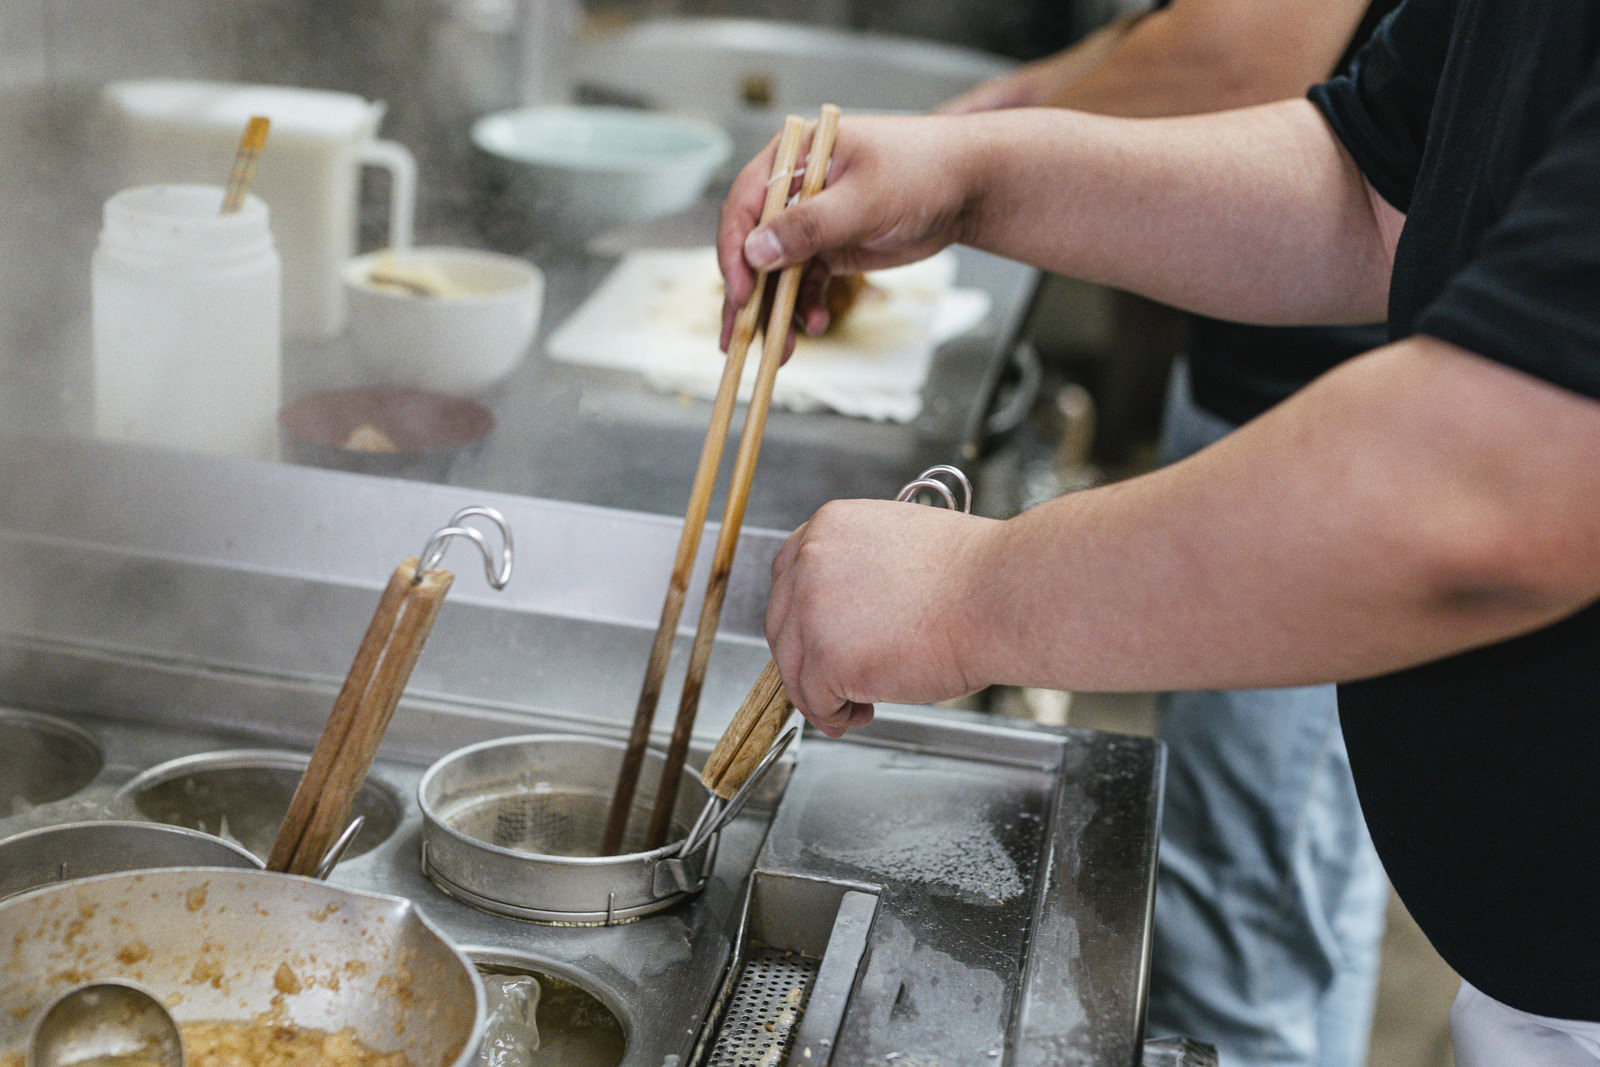 「麺が固まらないようにテボに箸を入れる様子 | フリー素材のぱくたそ」の写真